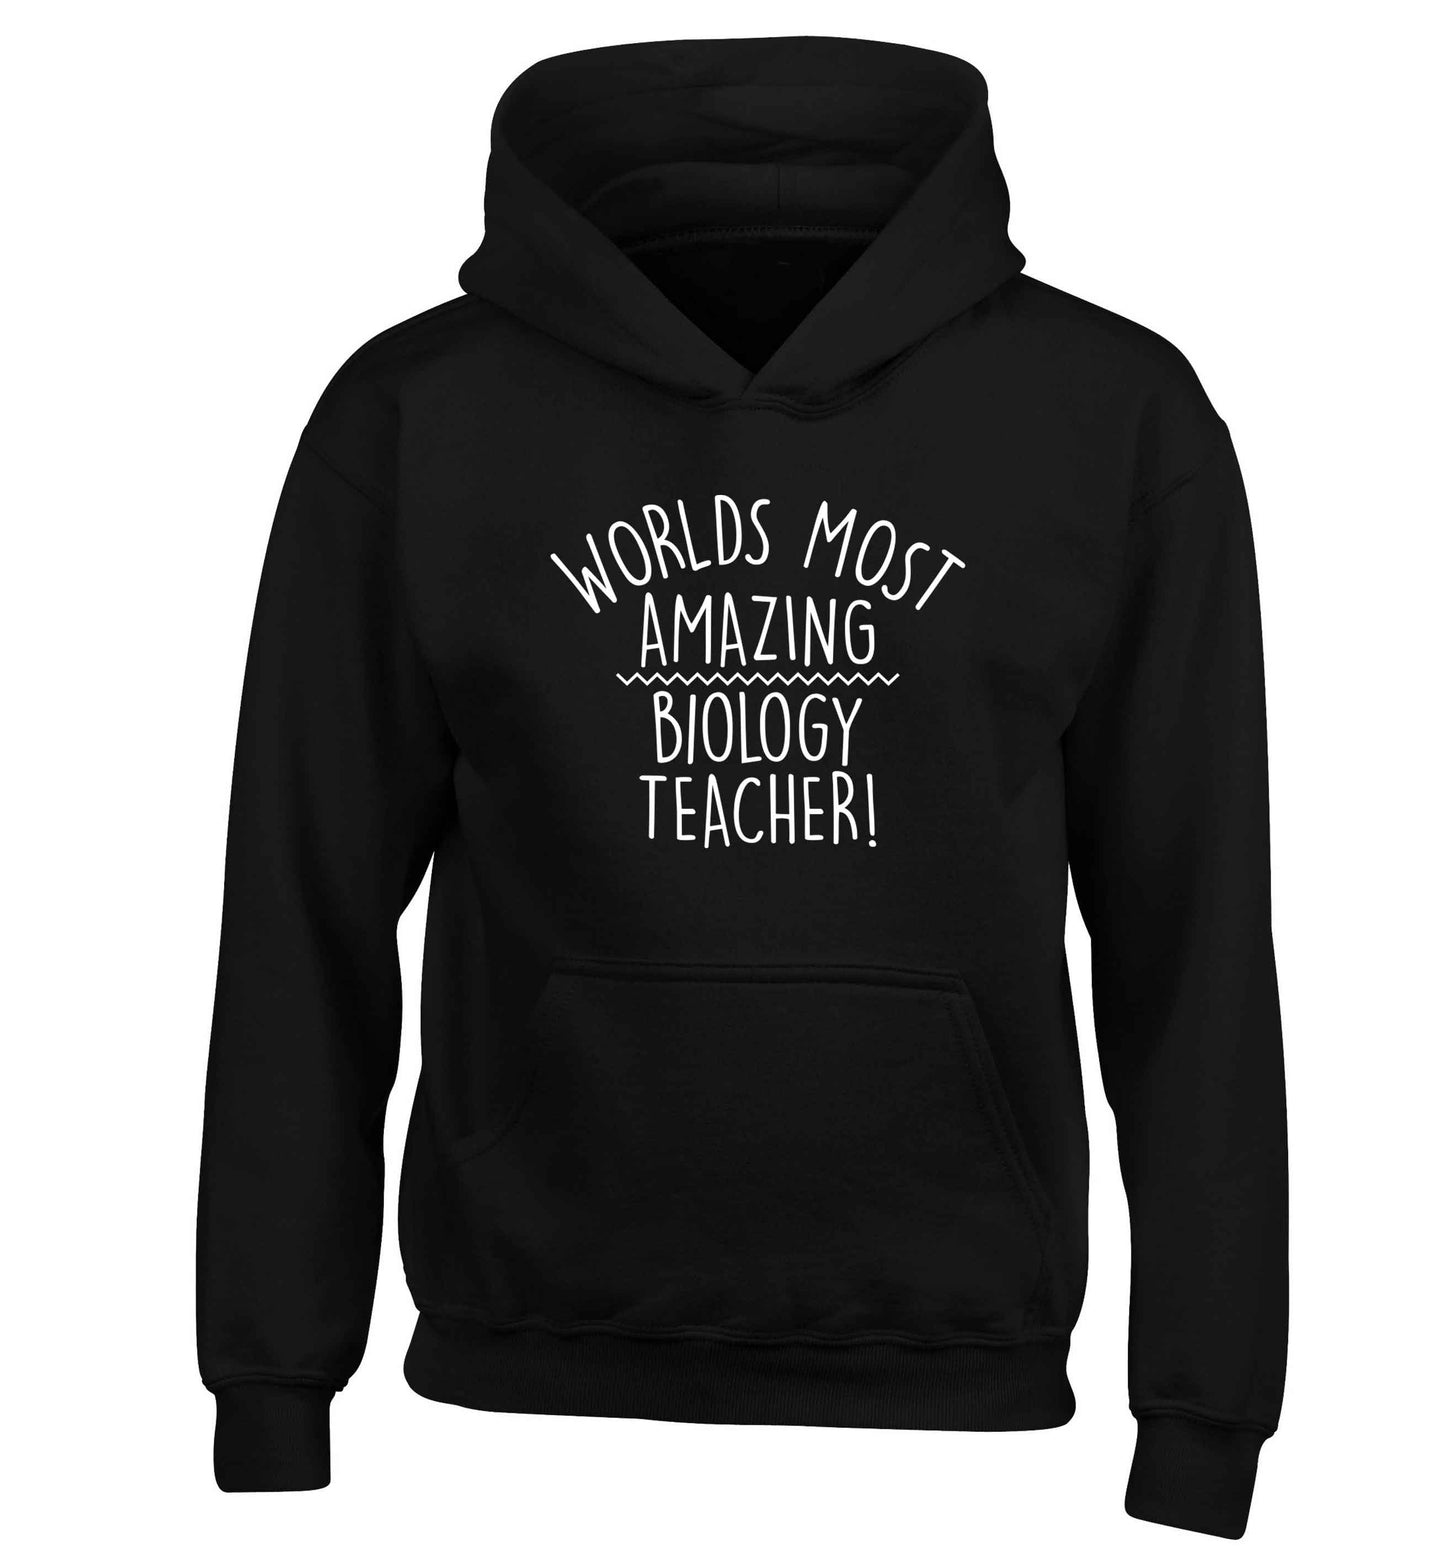 Worlds most amazing biology teacher children's black hoodie 12-13 Years